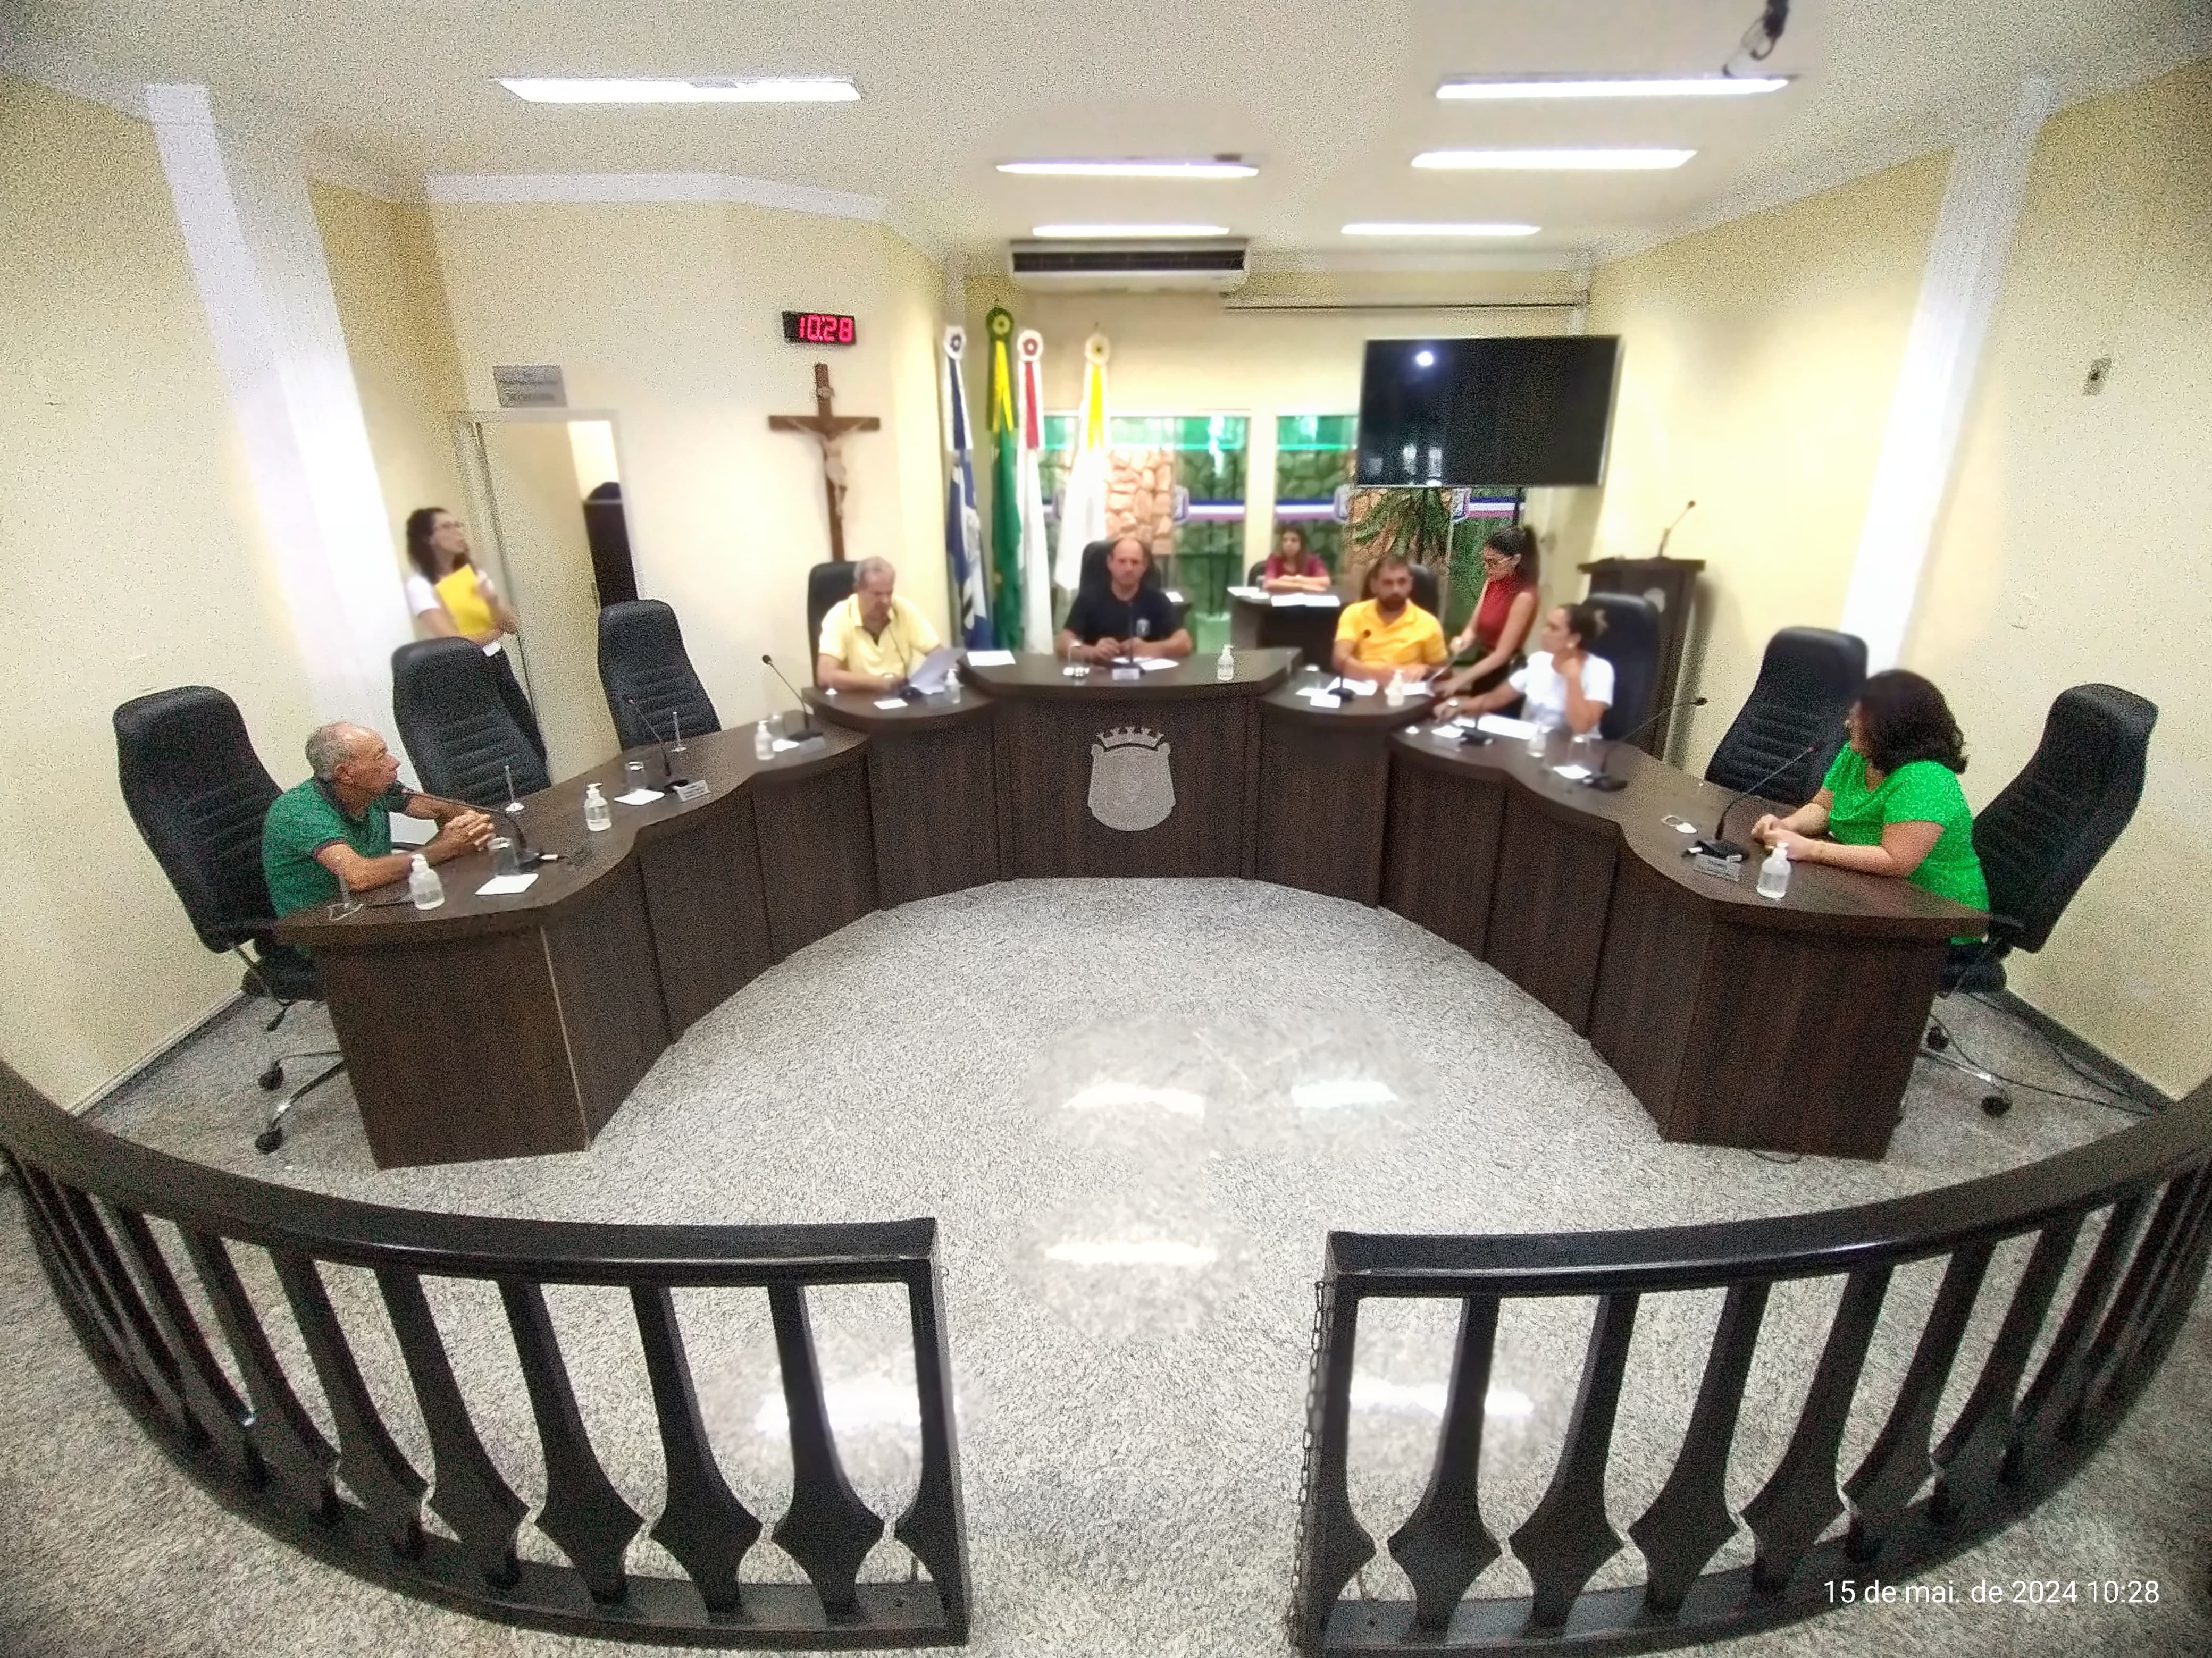 Poder Legislativo aprova projeto que dispõe sobre o Serviço de Assistência Judiciária – SAJ e o estágio curricular de estudantes no âmbito da CMSJN